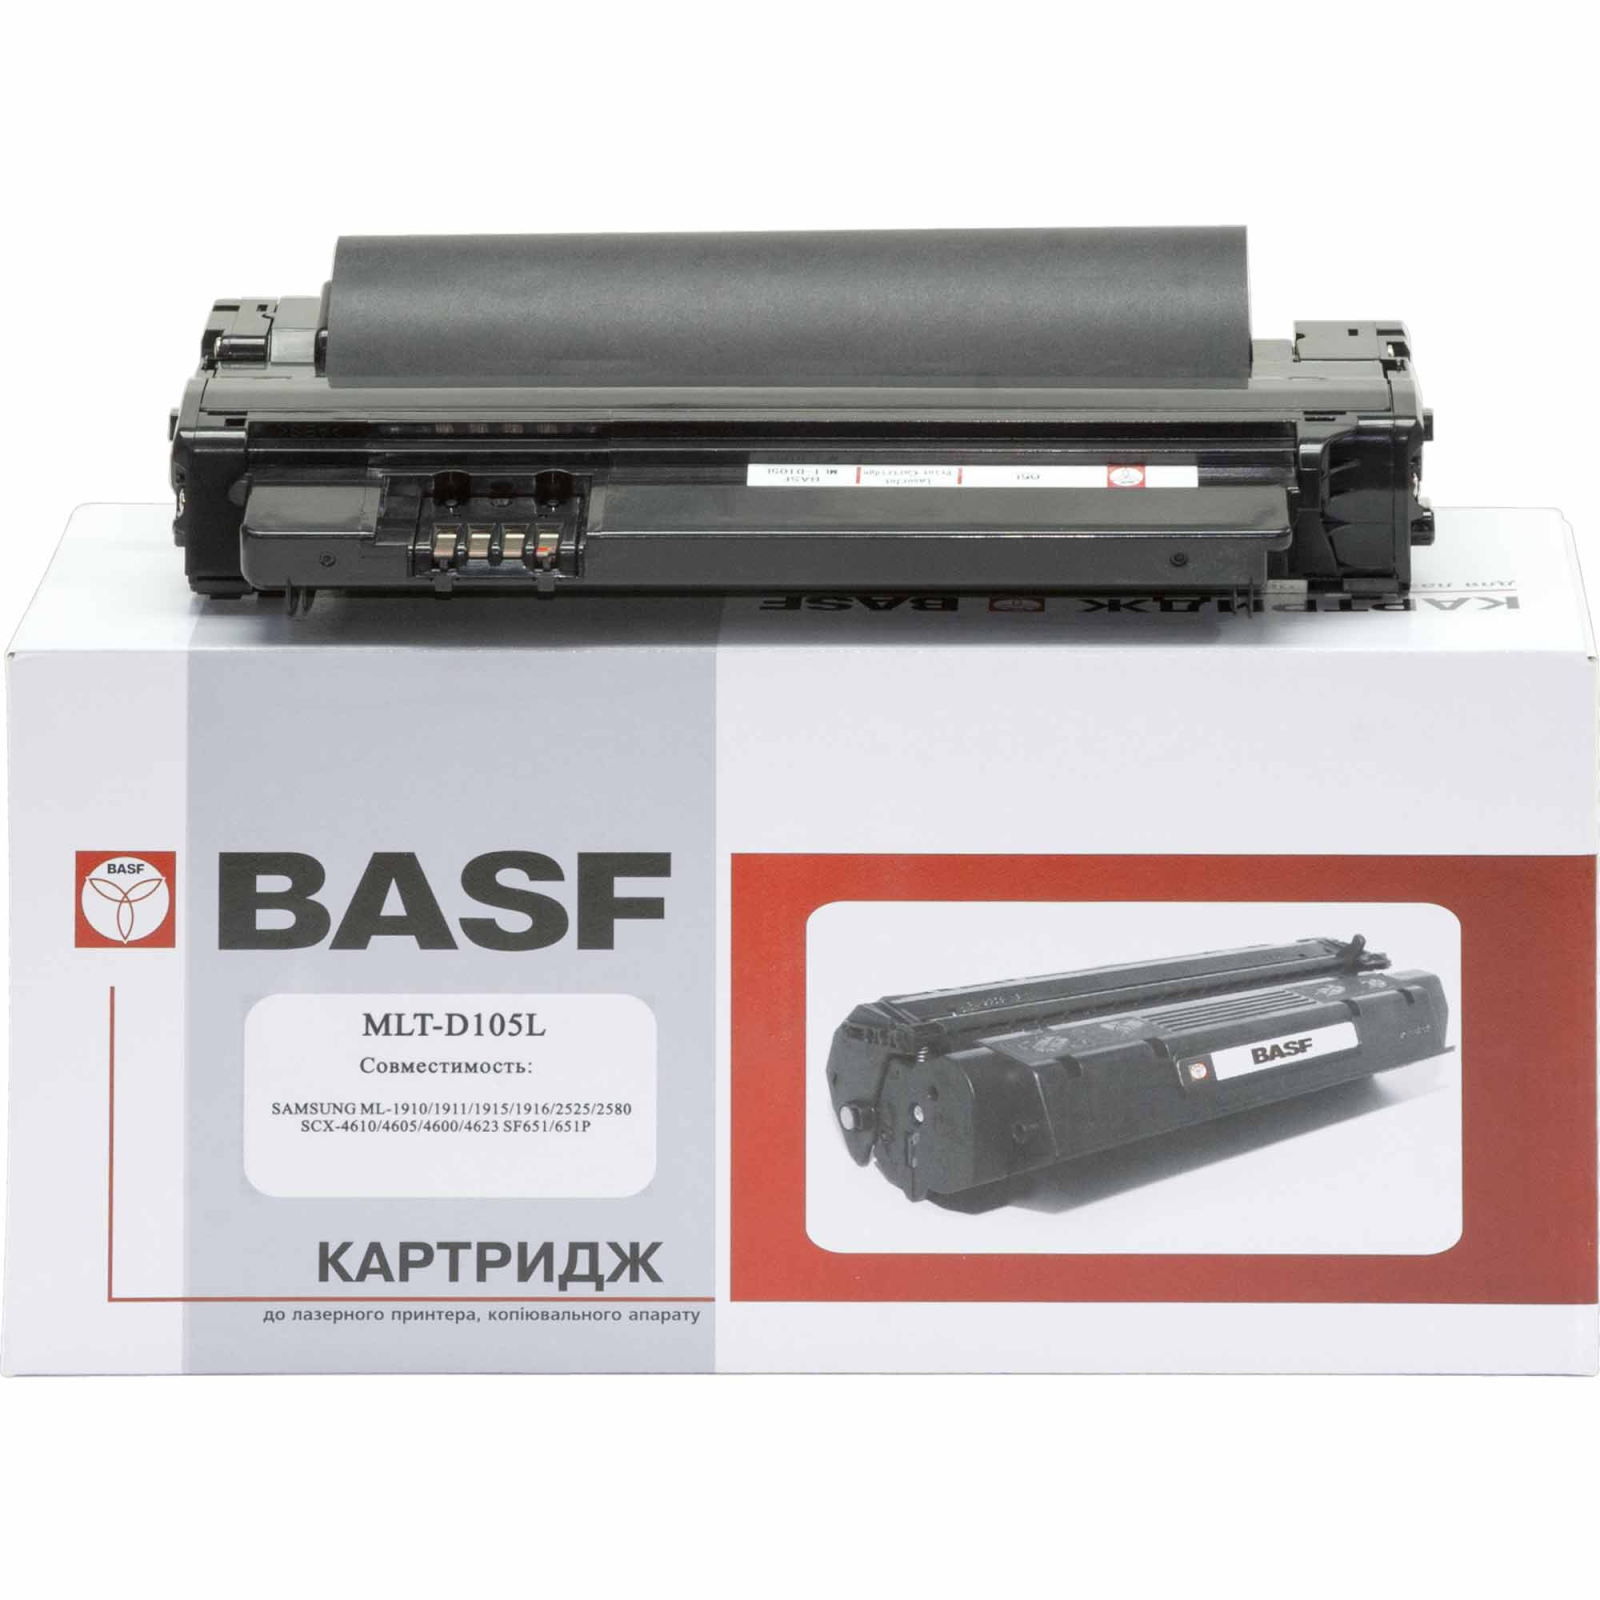 Картридж BASF для Samsung ML-1910/2525/SCX-4600/4623 (KT-MLTD105L) зображення 2